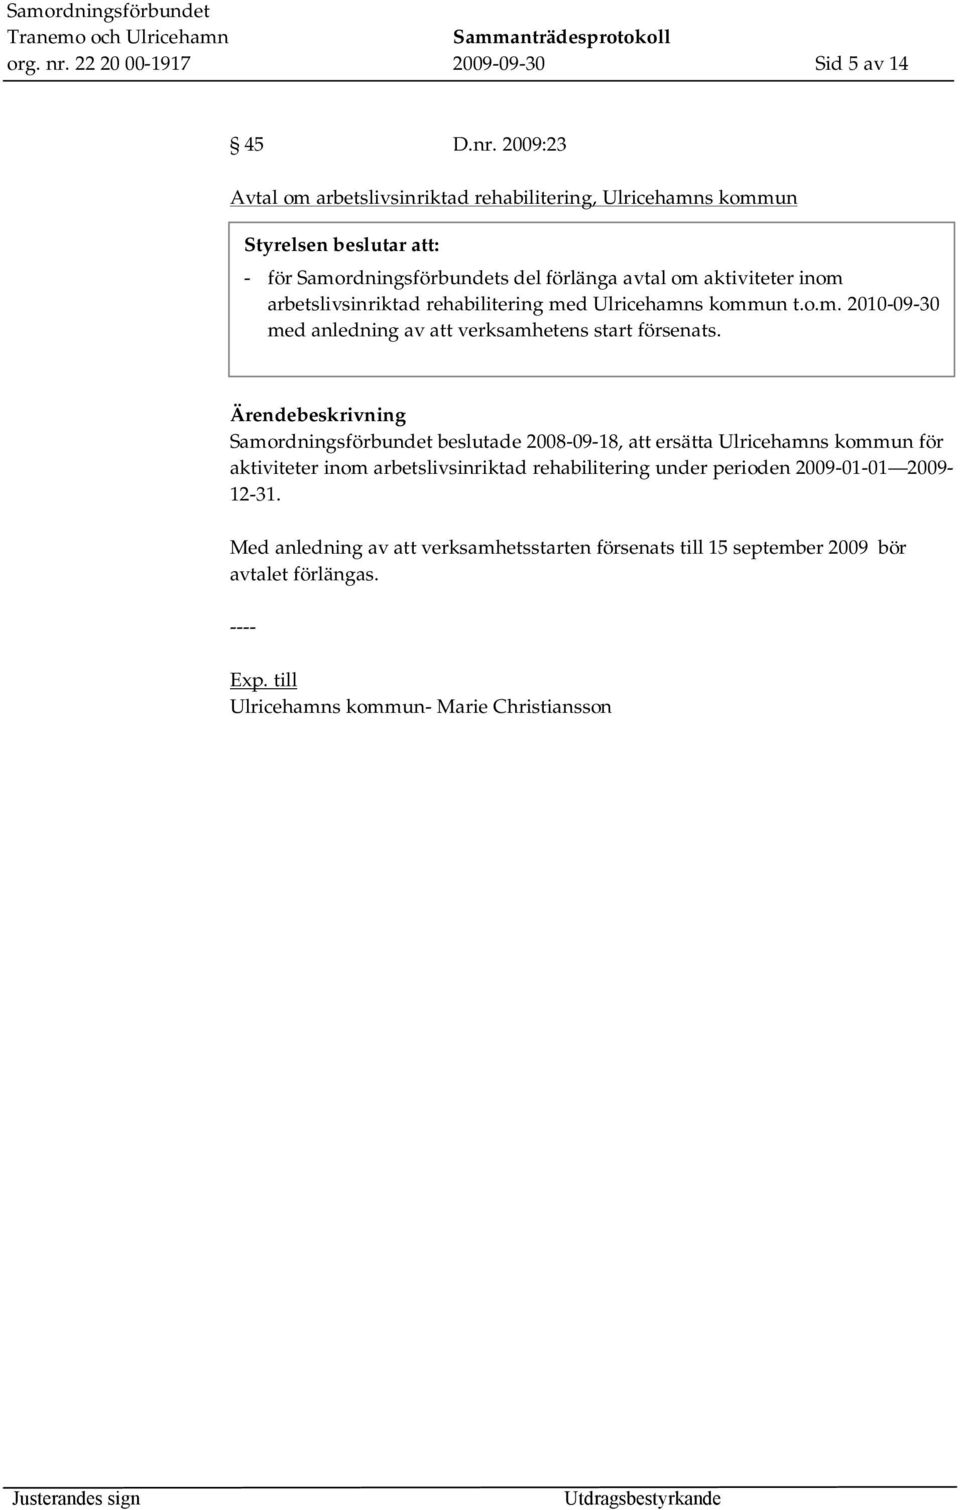 2009:23 Avtal om arbetslivsinriktad rehabilitering, Ulricehamns kommun - för Samordningsförbundets del förlänga avtal om aktiviteter inom arbetslivsinriktad